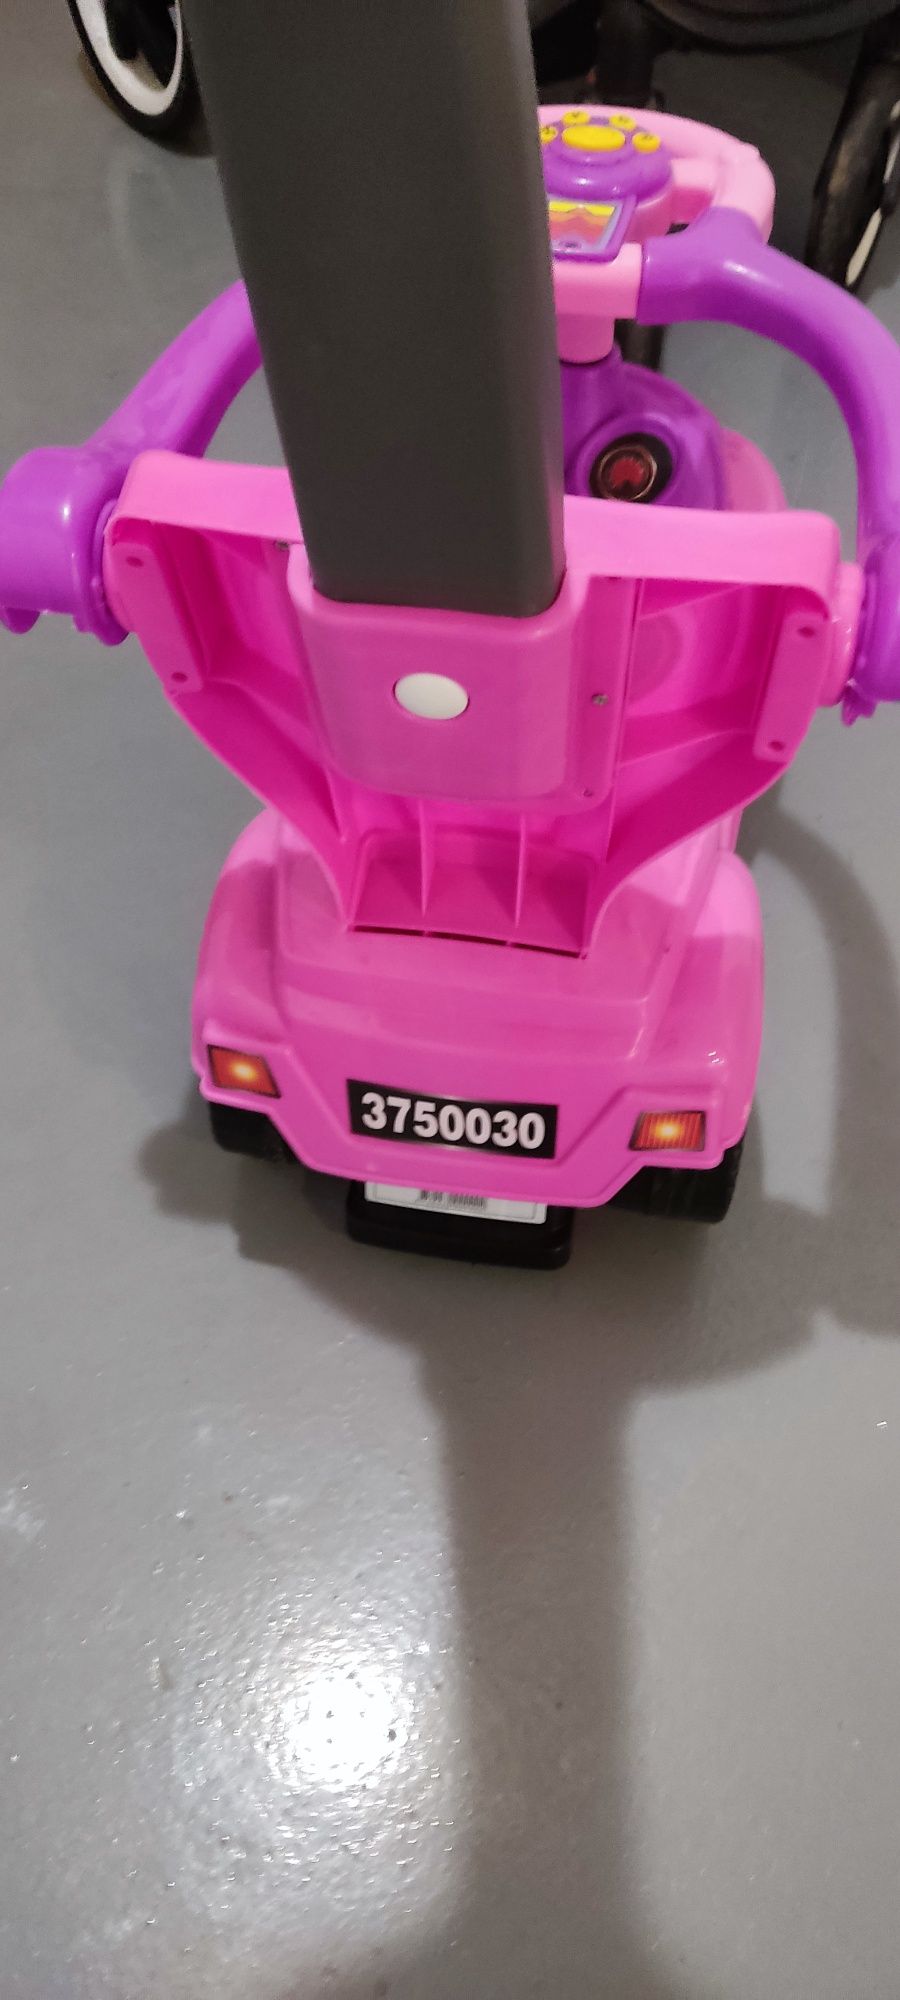 Jeździk 3w1 różowy samochód